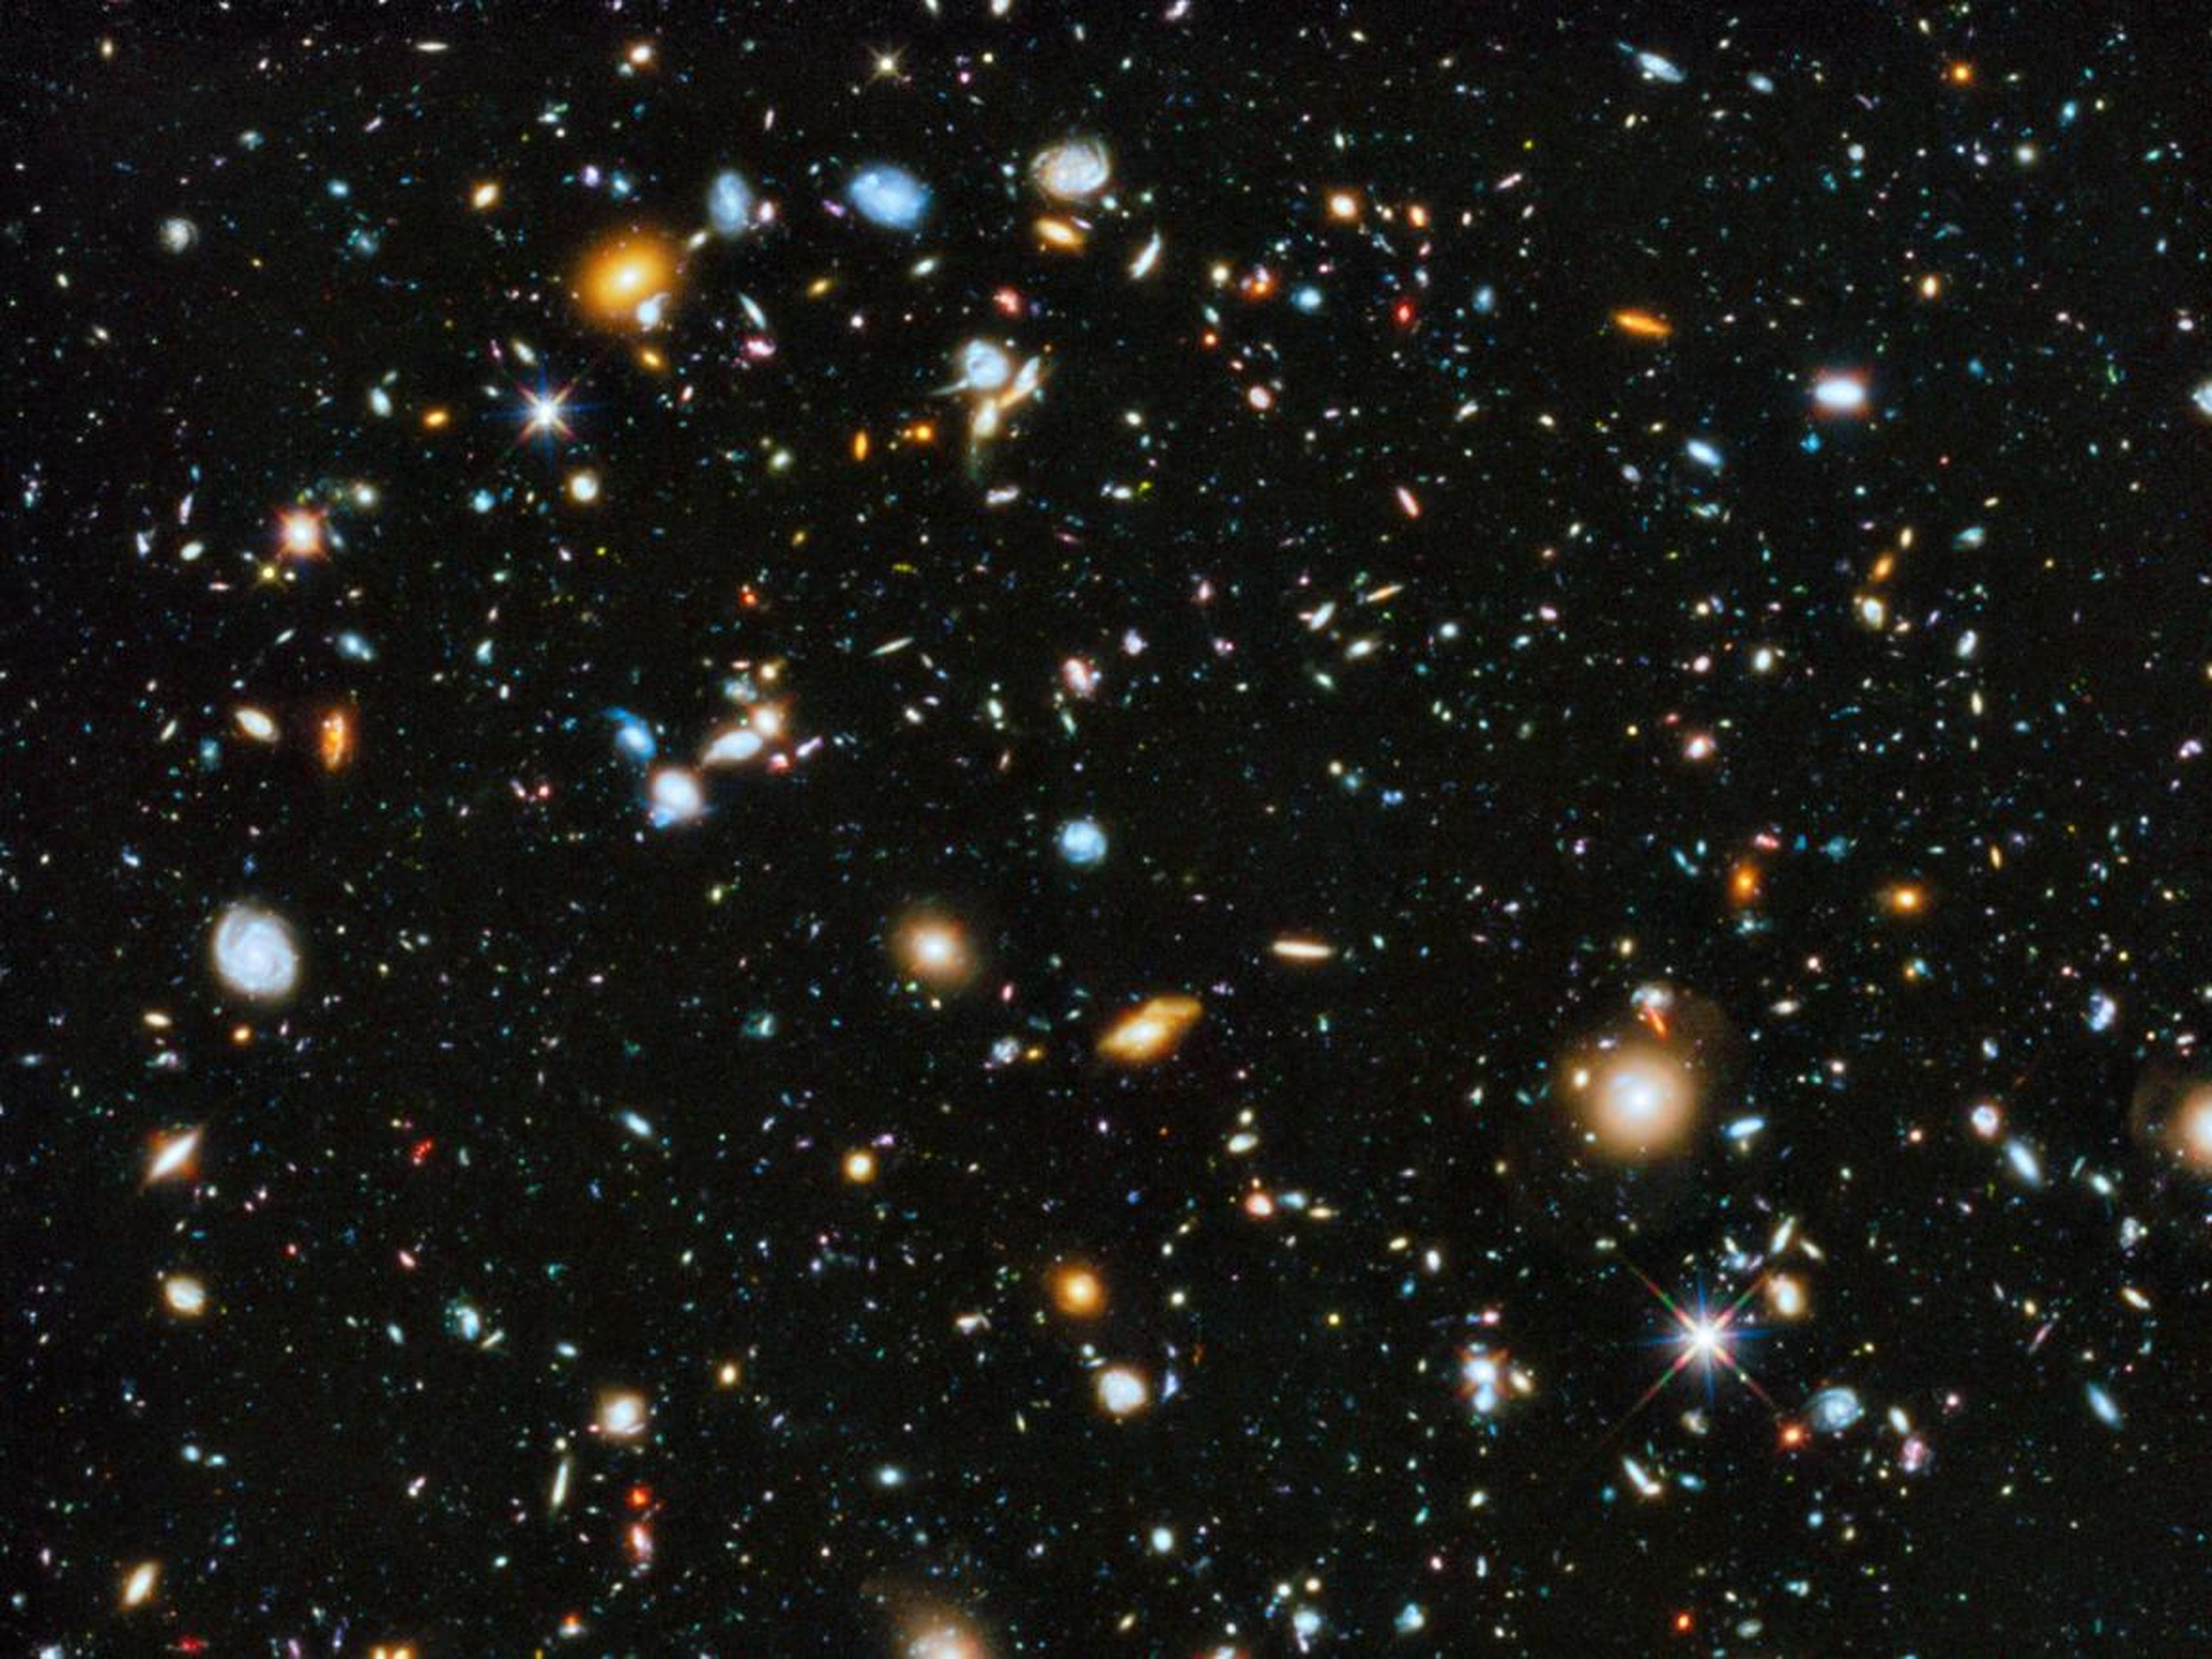 Nueve años de observación del Hubble revelaron alrededor de 10.000 galaxias en uno de los parches más profundos y oscuros del cielo nocturno del universo.